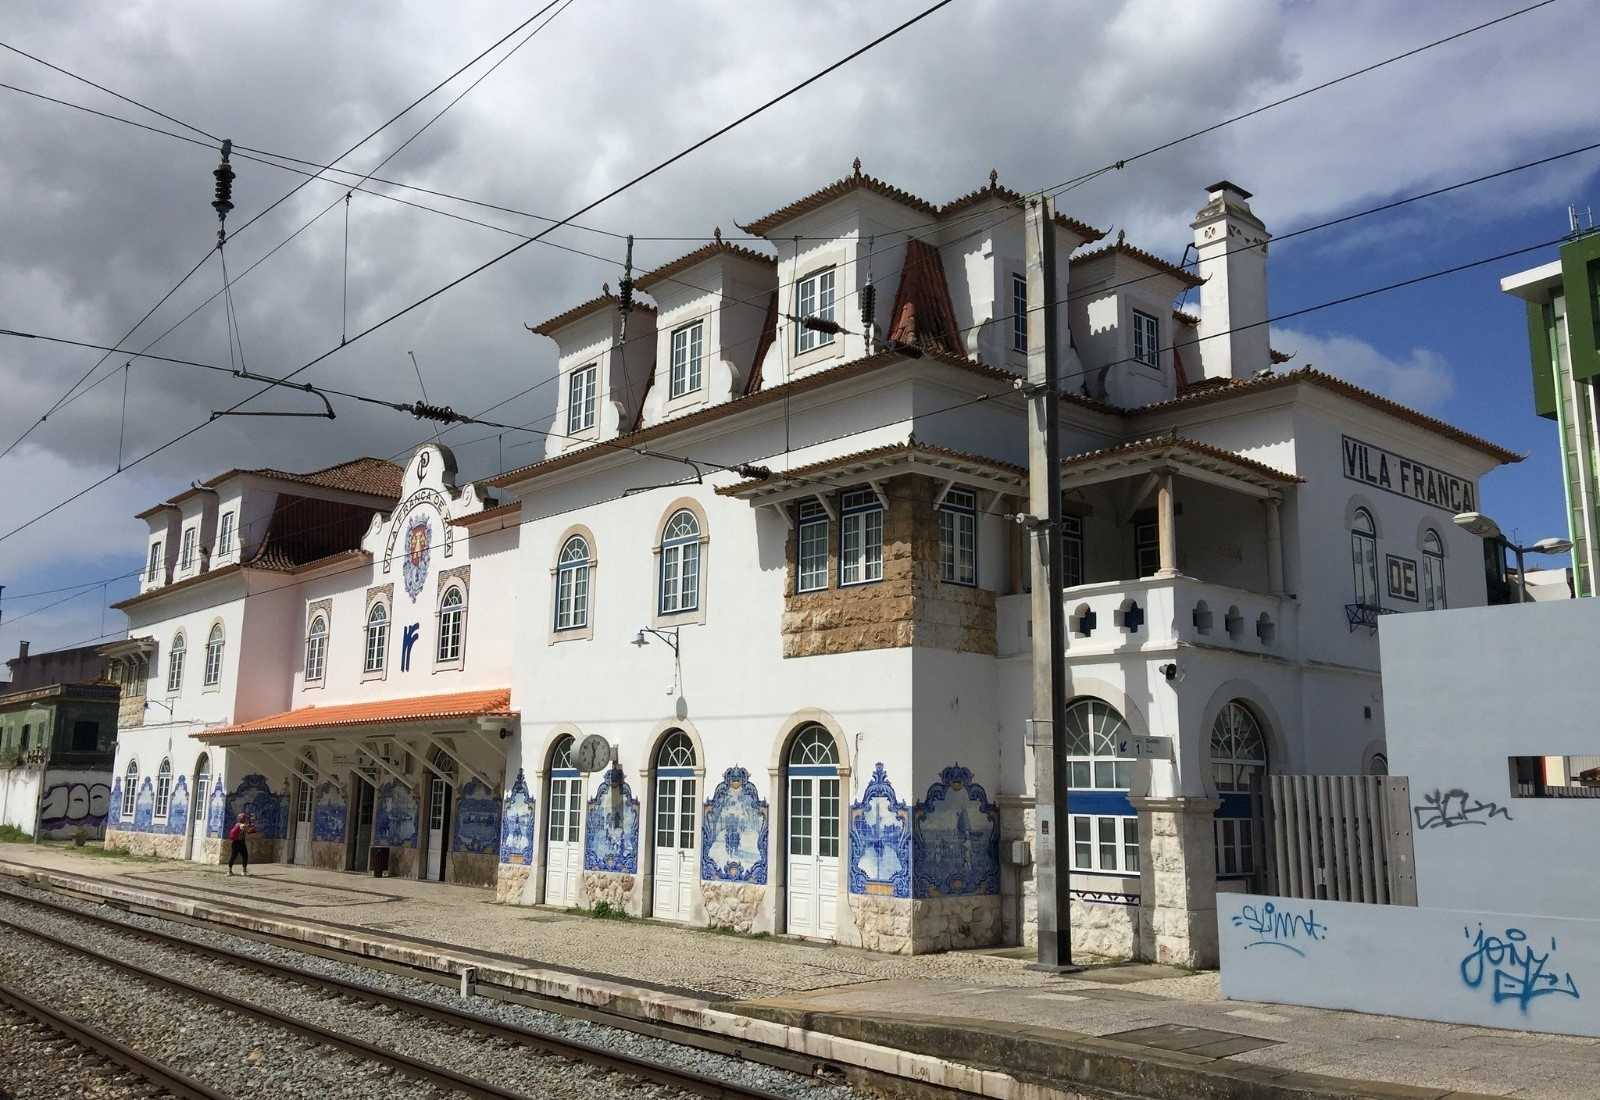 estacion etapa alpriate vilafranca de xira camino portugues